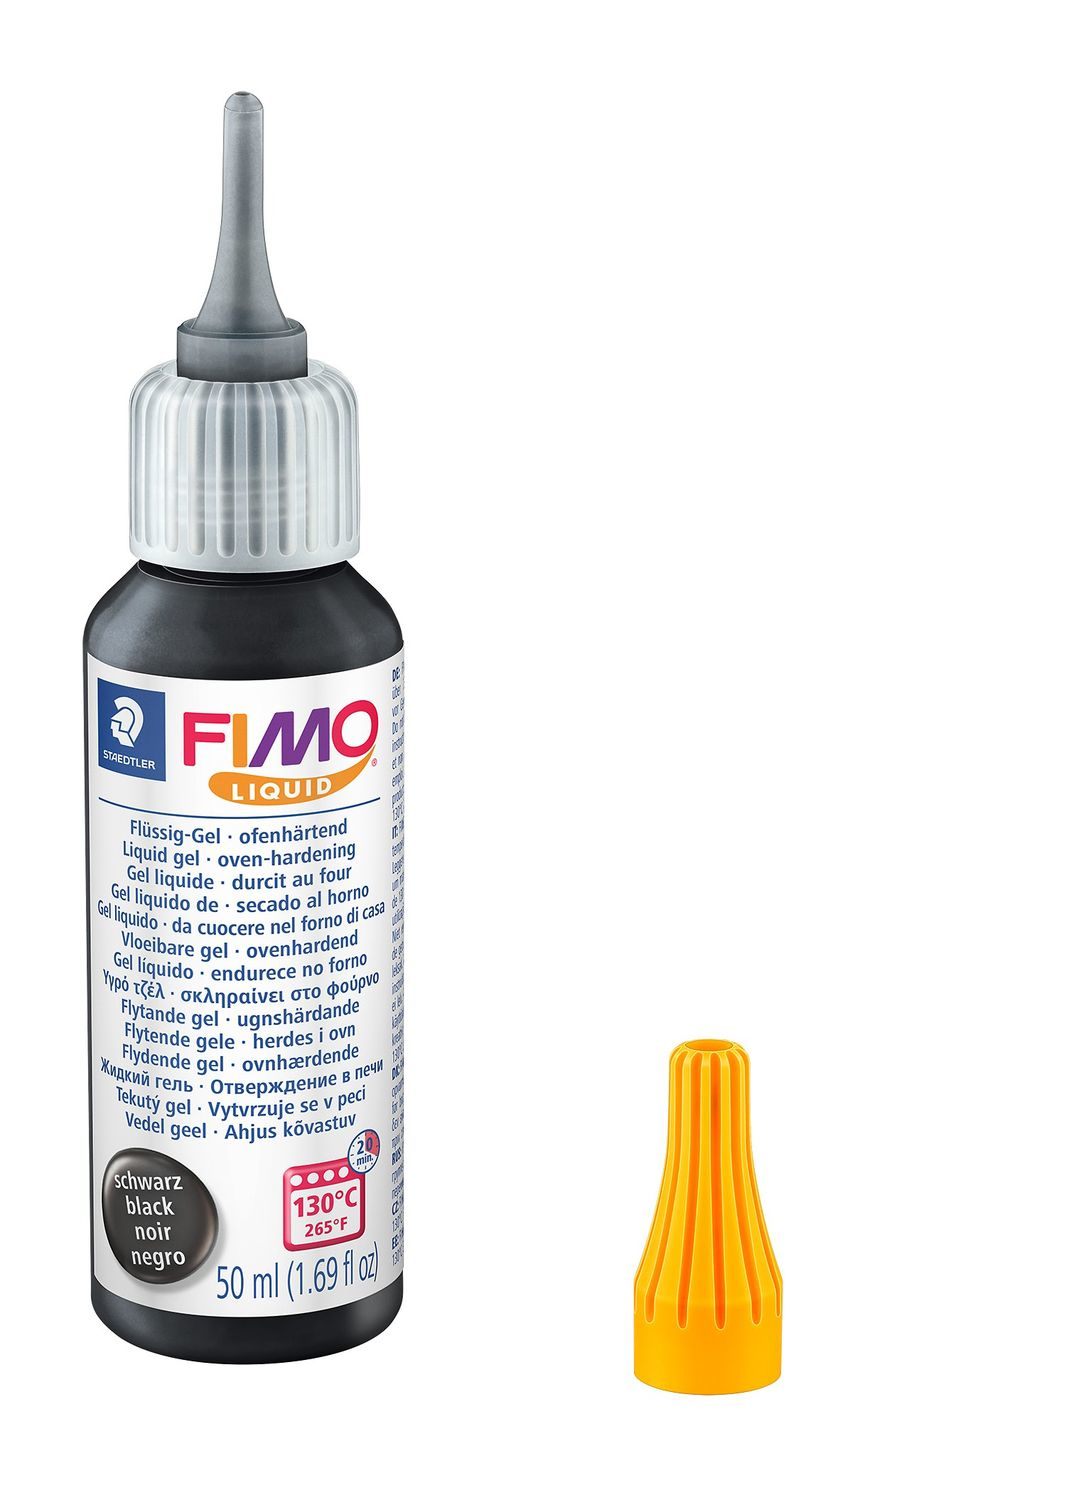 Staedtler FIMO 8050 Dekorier-Gel in Schwarz - Perfekt für Erwachsene - 1 Stück - Backtemperatur: 130 °C - Aushärtezeit: 20 Min.